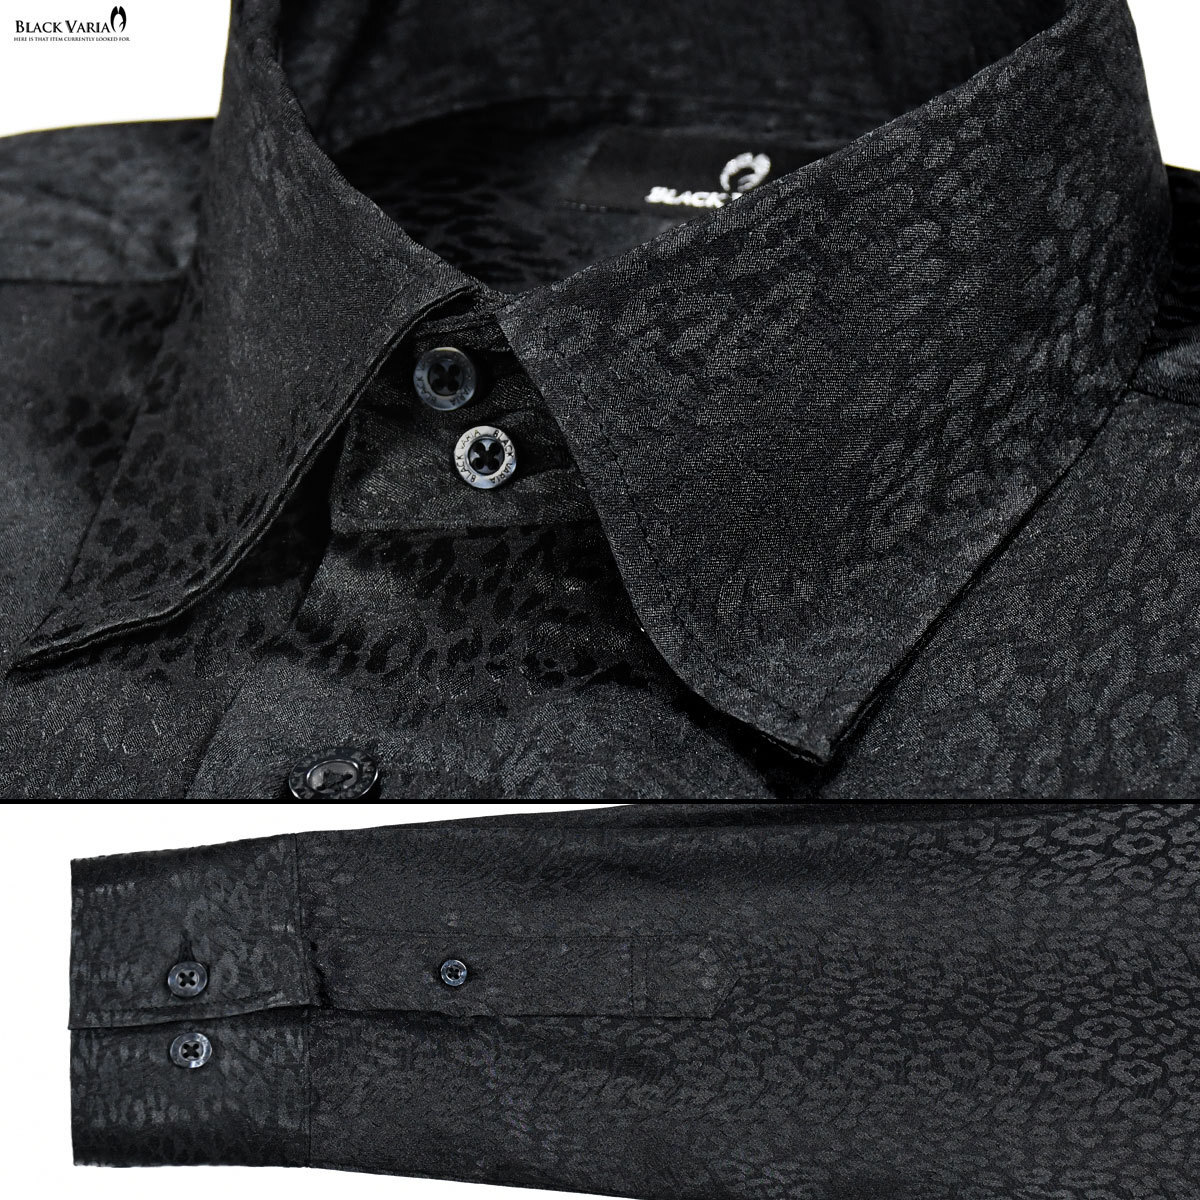 a181710-bk BLACK VARIA ドゥエボットーニ ヒョウ柄 豹 ジャガード レギュラーカラードレスシャツ 日本製 メンズ(ブラック黒) S ステージ_画像5